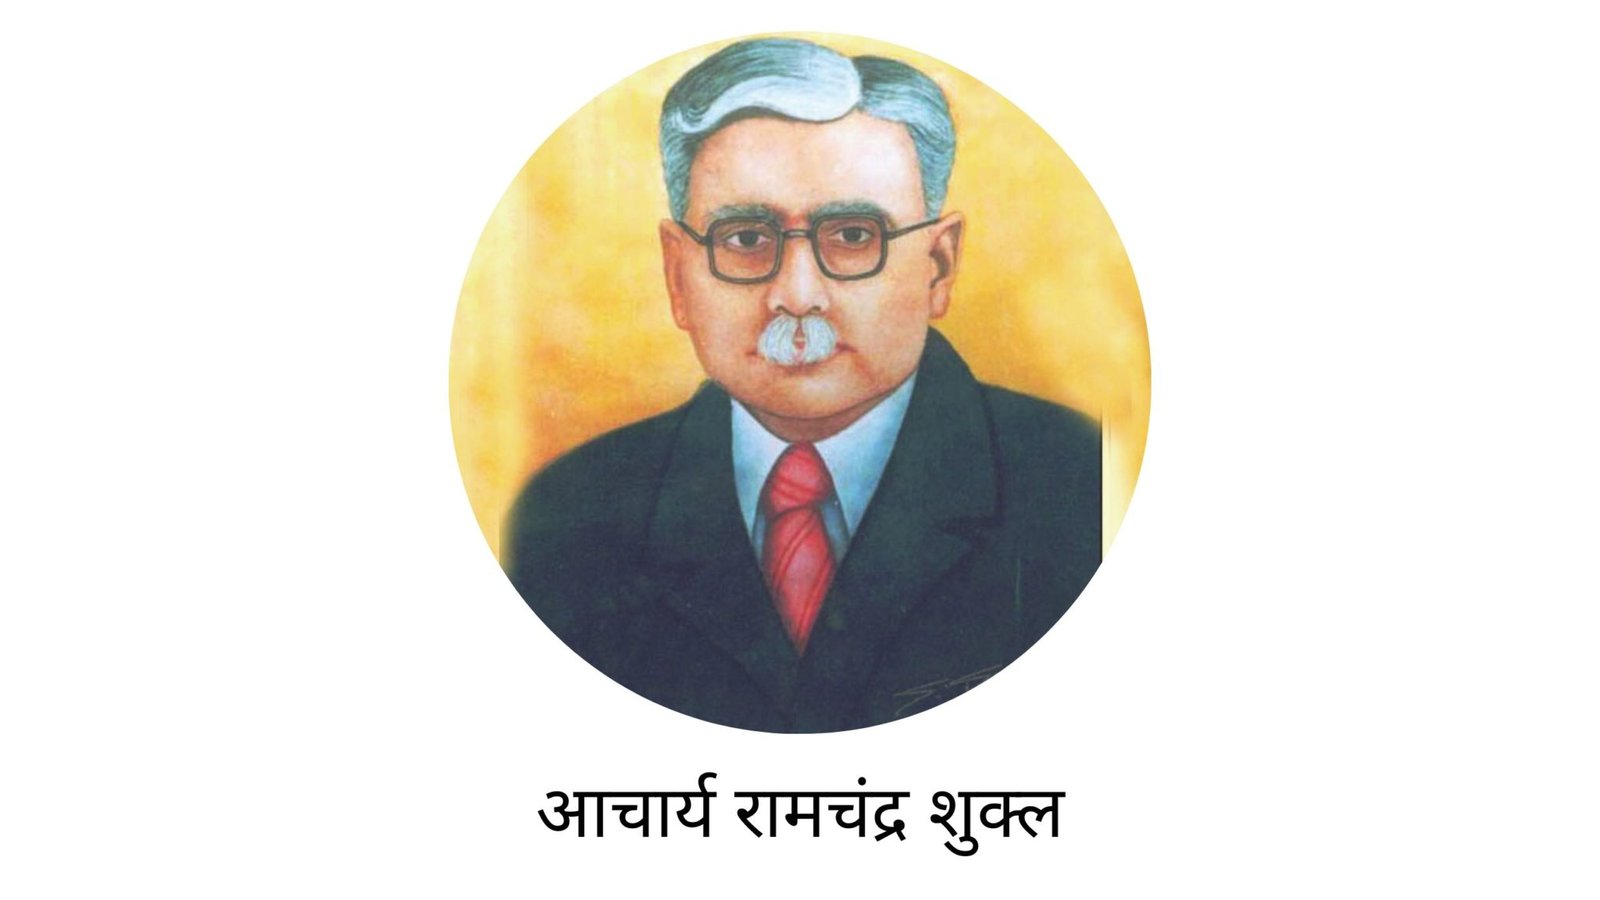 Aacharya Ramchandra Shukla ka Jivan Parichay